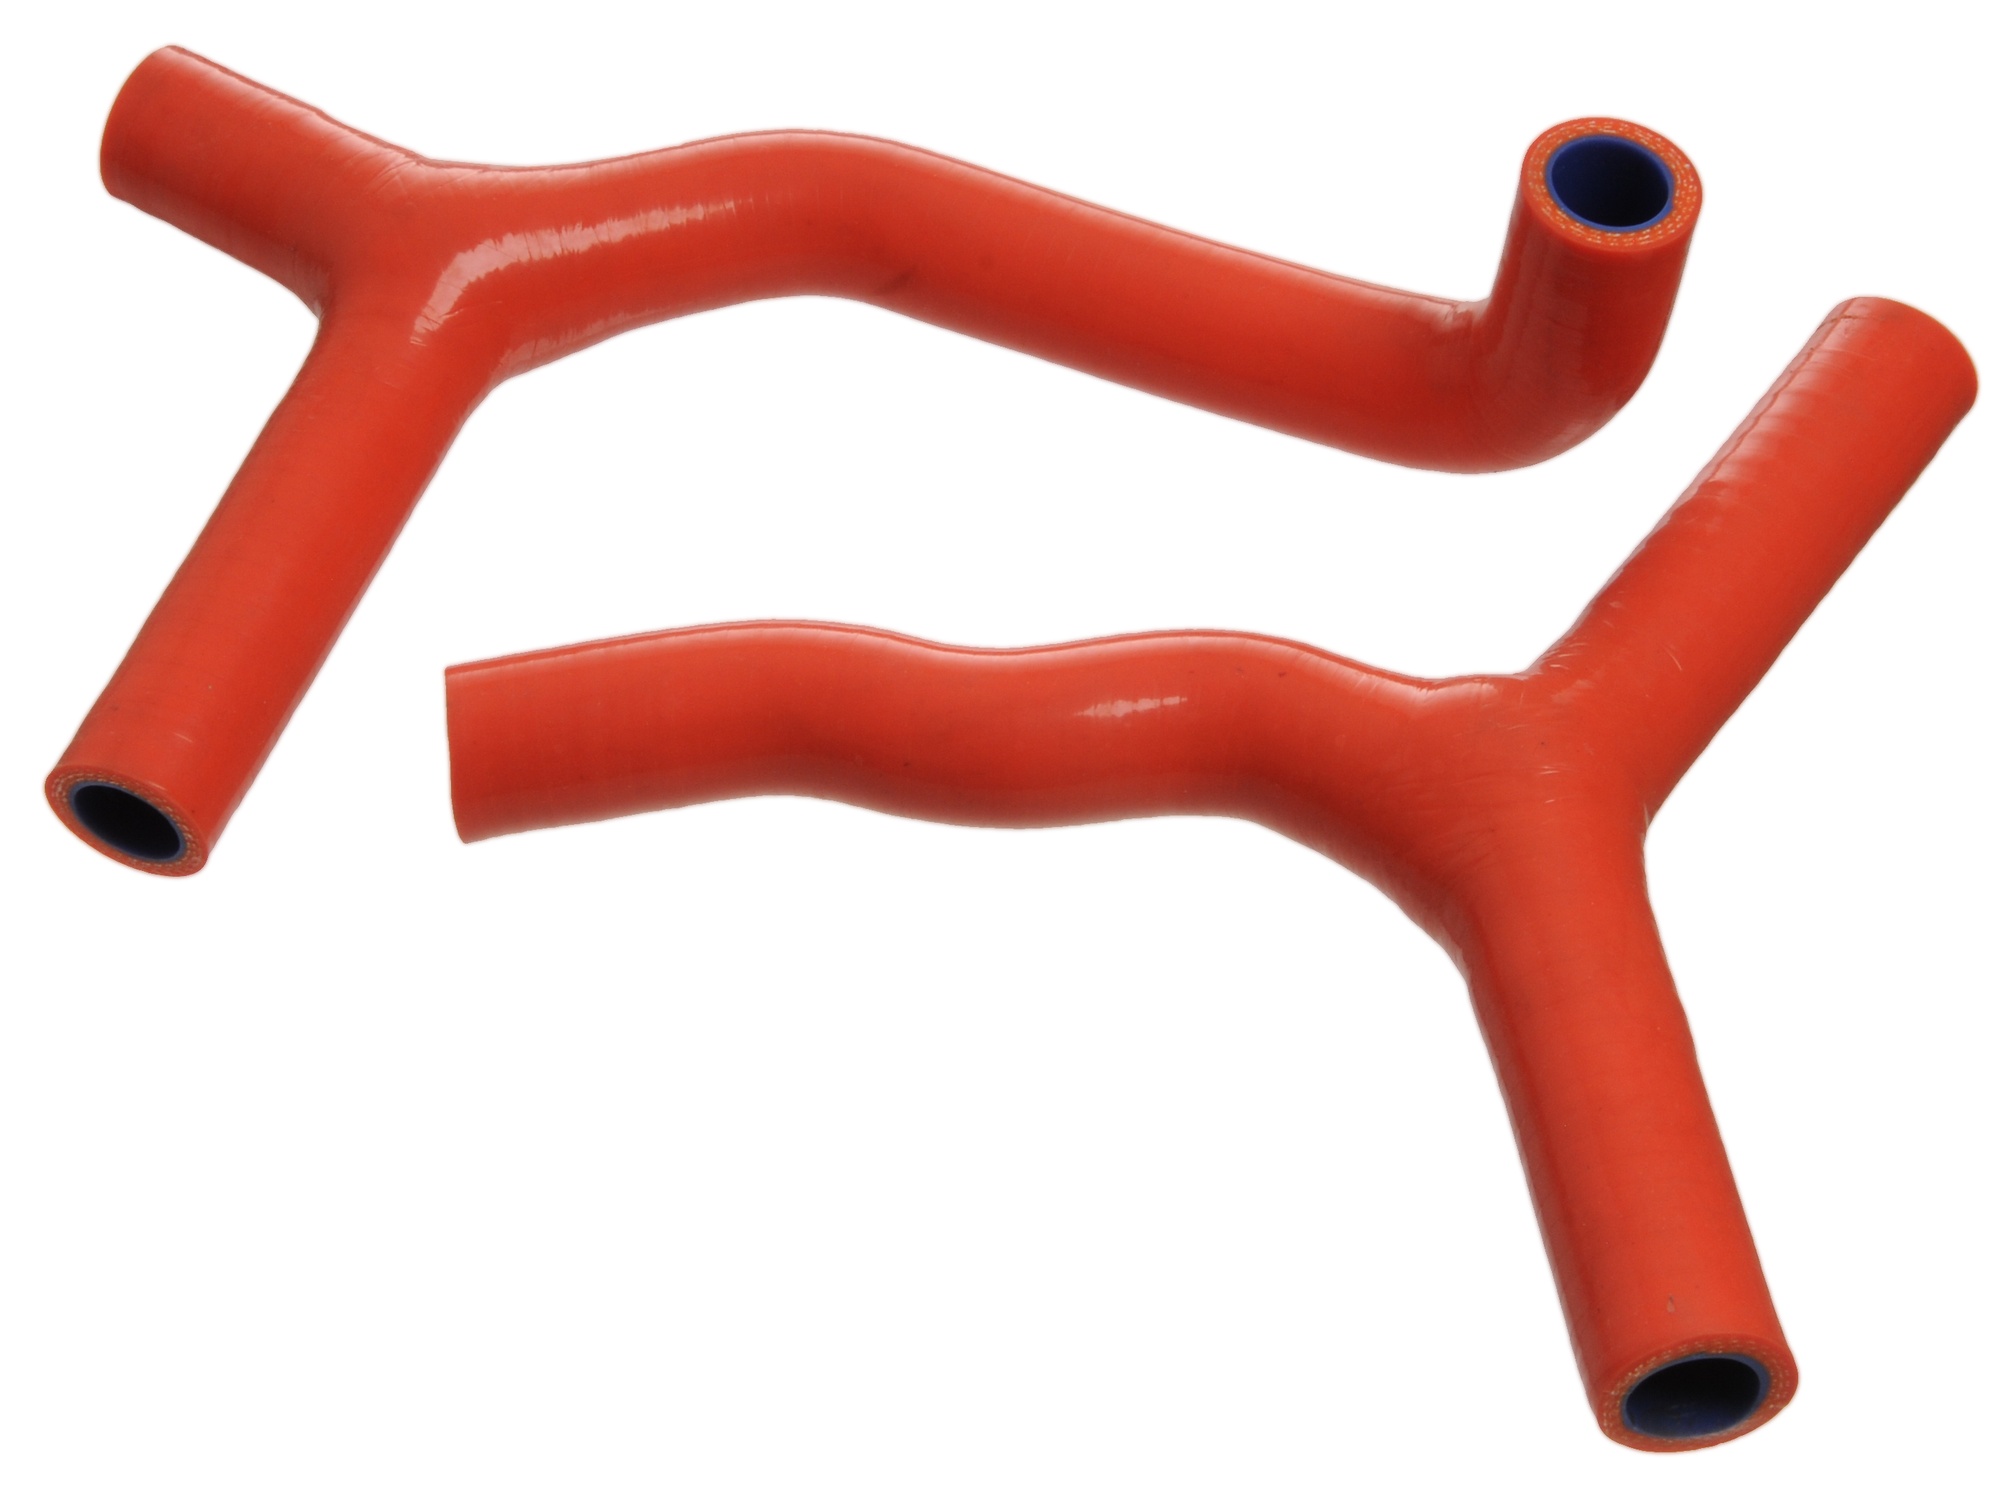 Obrázek produktu sada silikonových hadic vodního chlazení, oranžová 2ks M010 orange